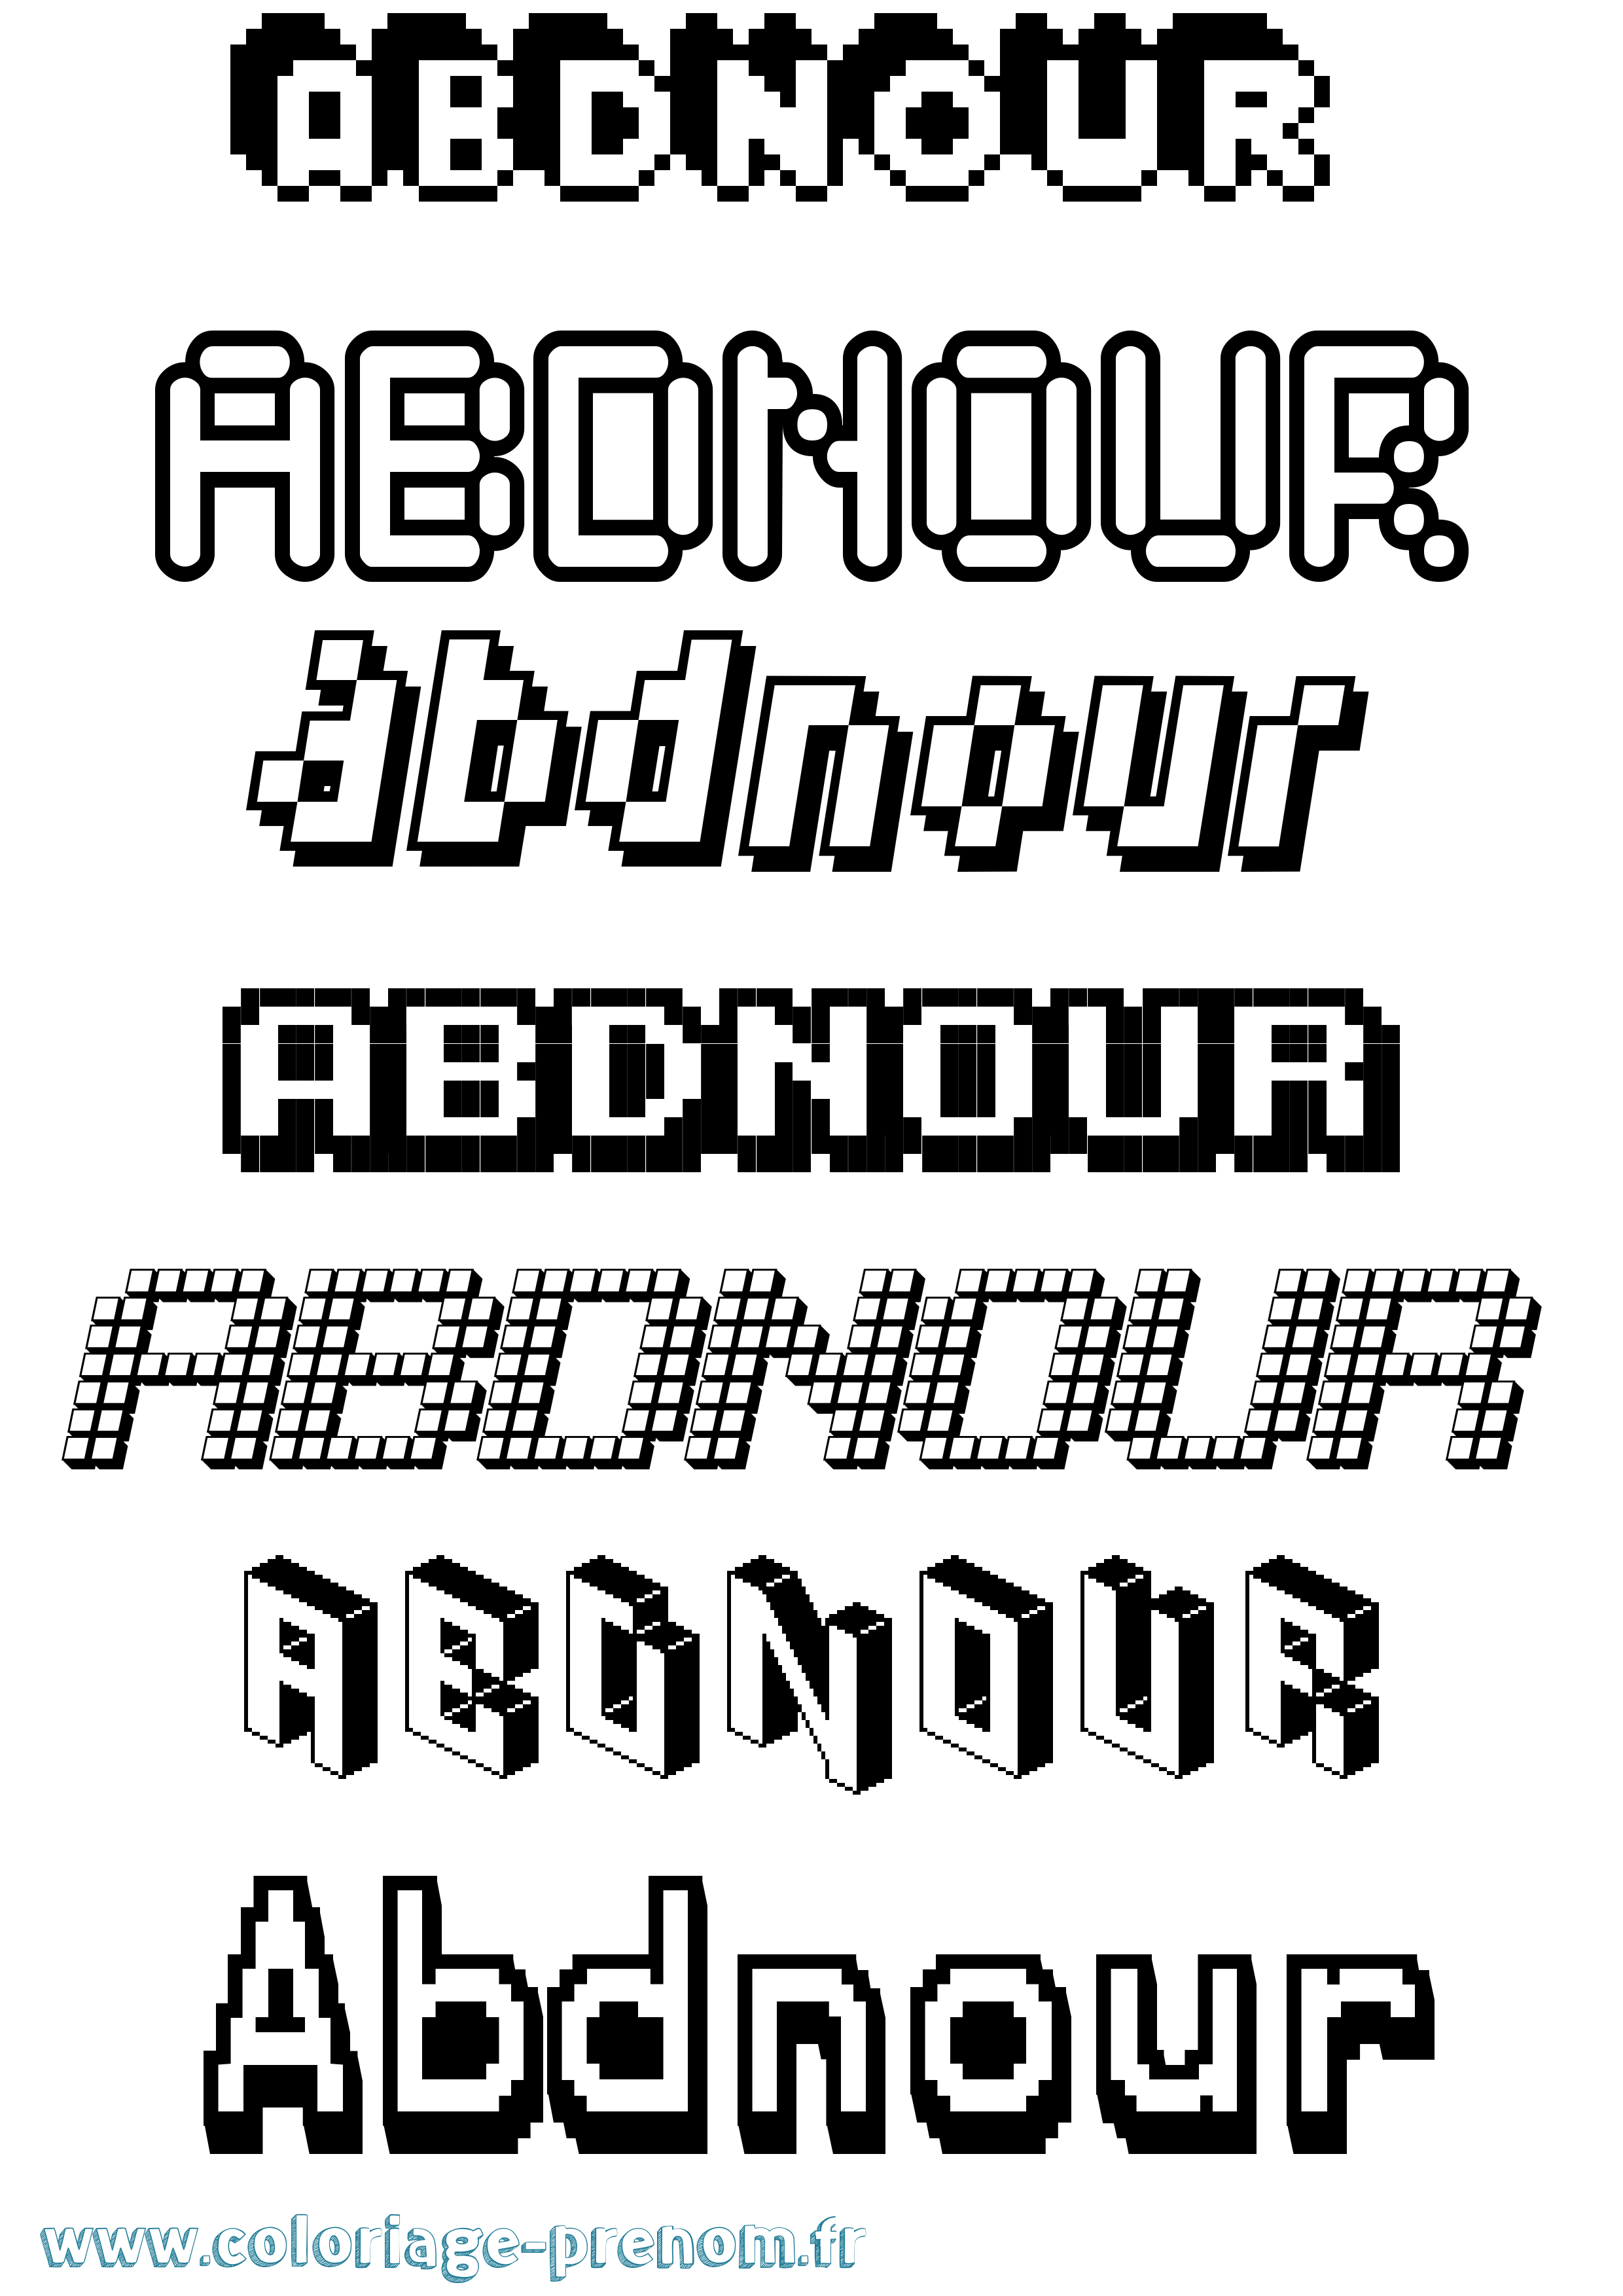 Coloriage prénom Abdnour Pixel